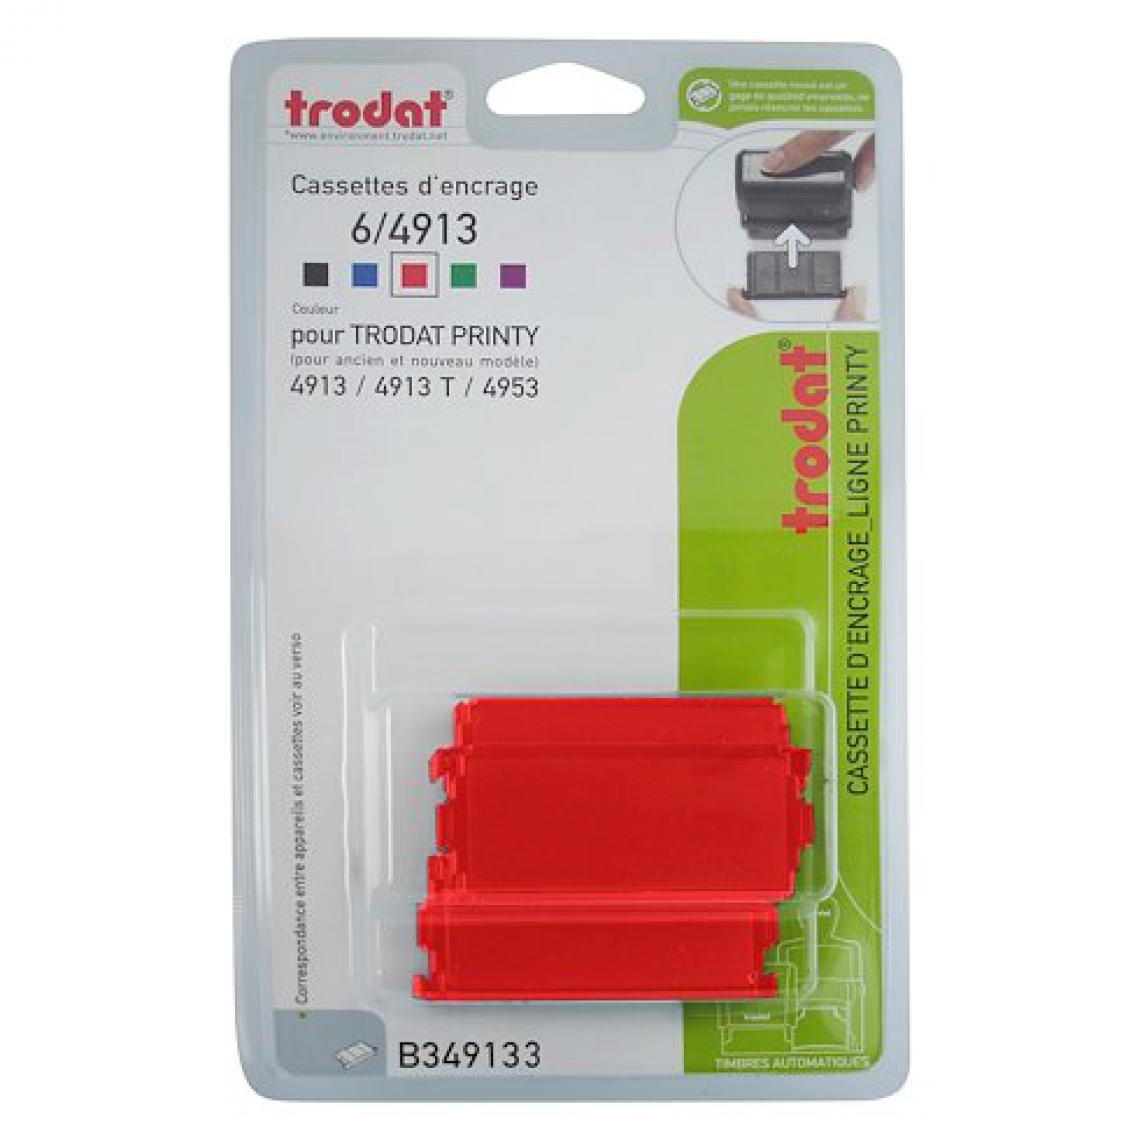 Trodat - Cassette d'encrage Trodat Printy 6/4913 - rouge - Lot de 3 - Accessoires Bureau